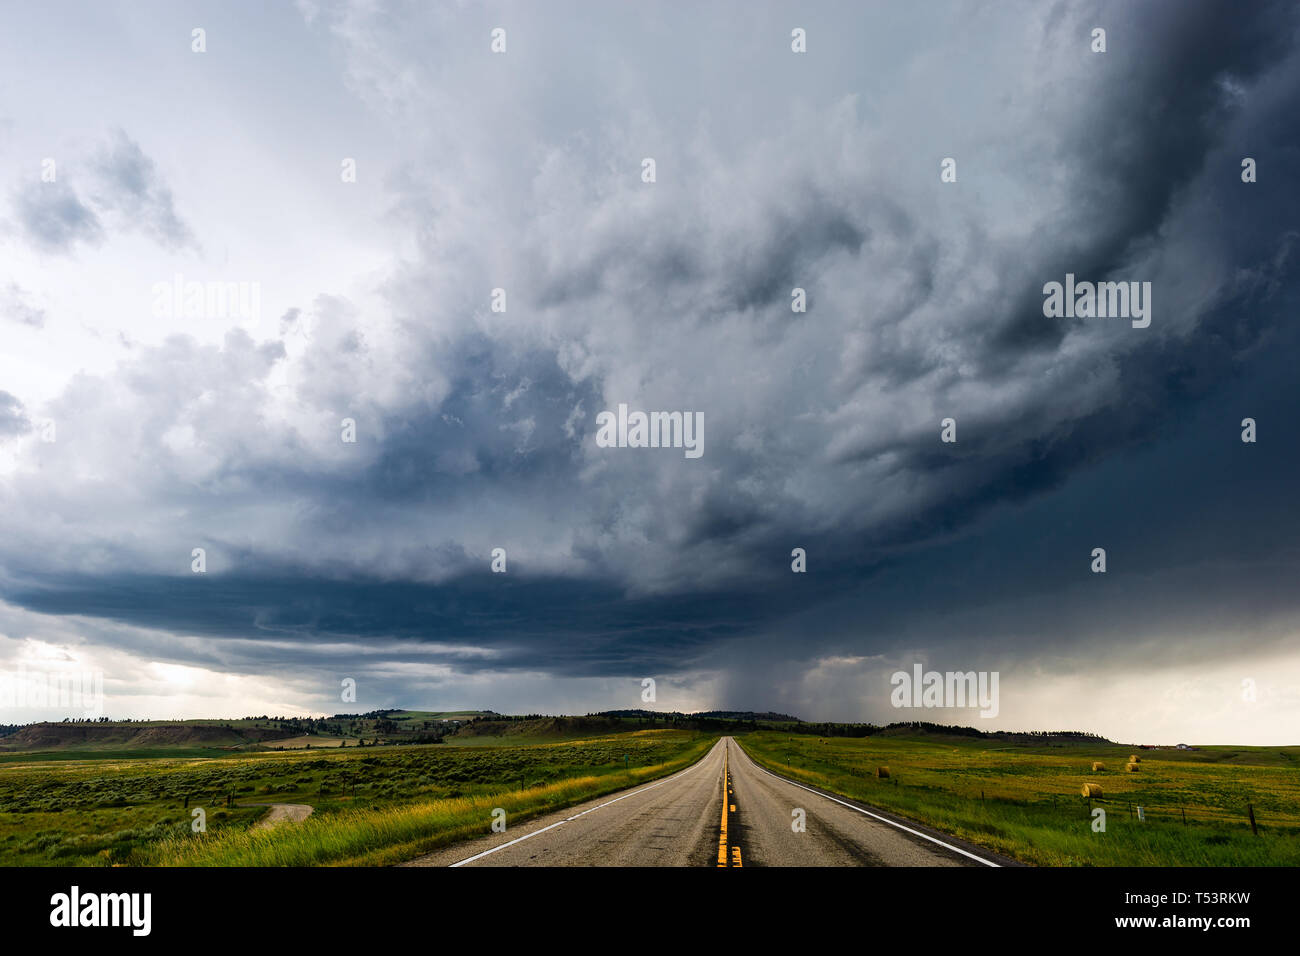 Dritta strada che conduce a scure nuvole temporalesche nei pressi di Joliet, Montana, USA Foto Stock